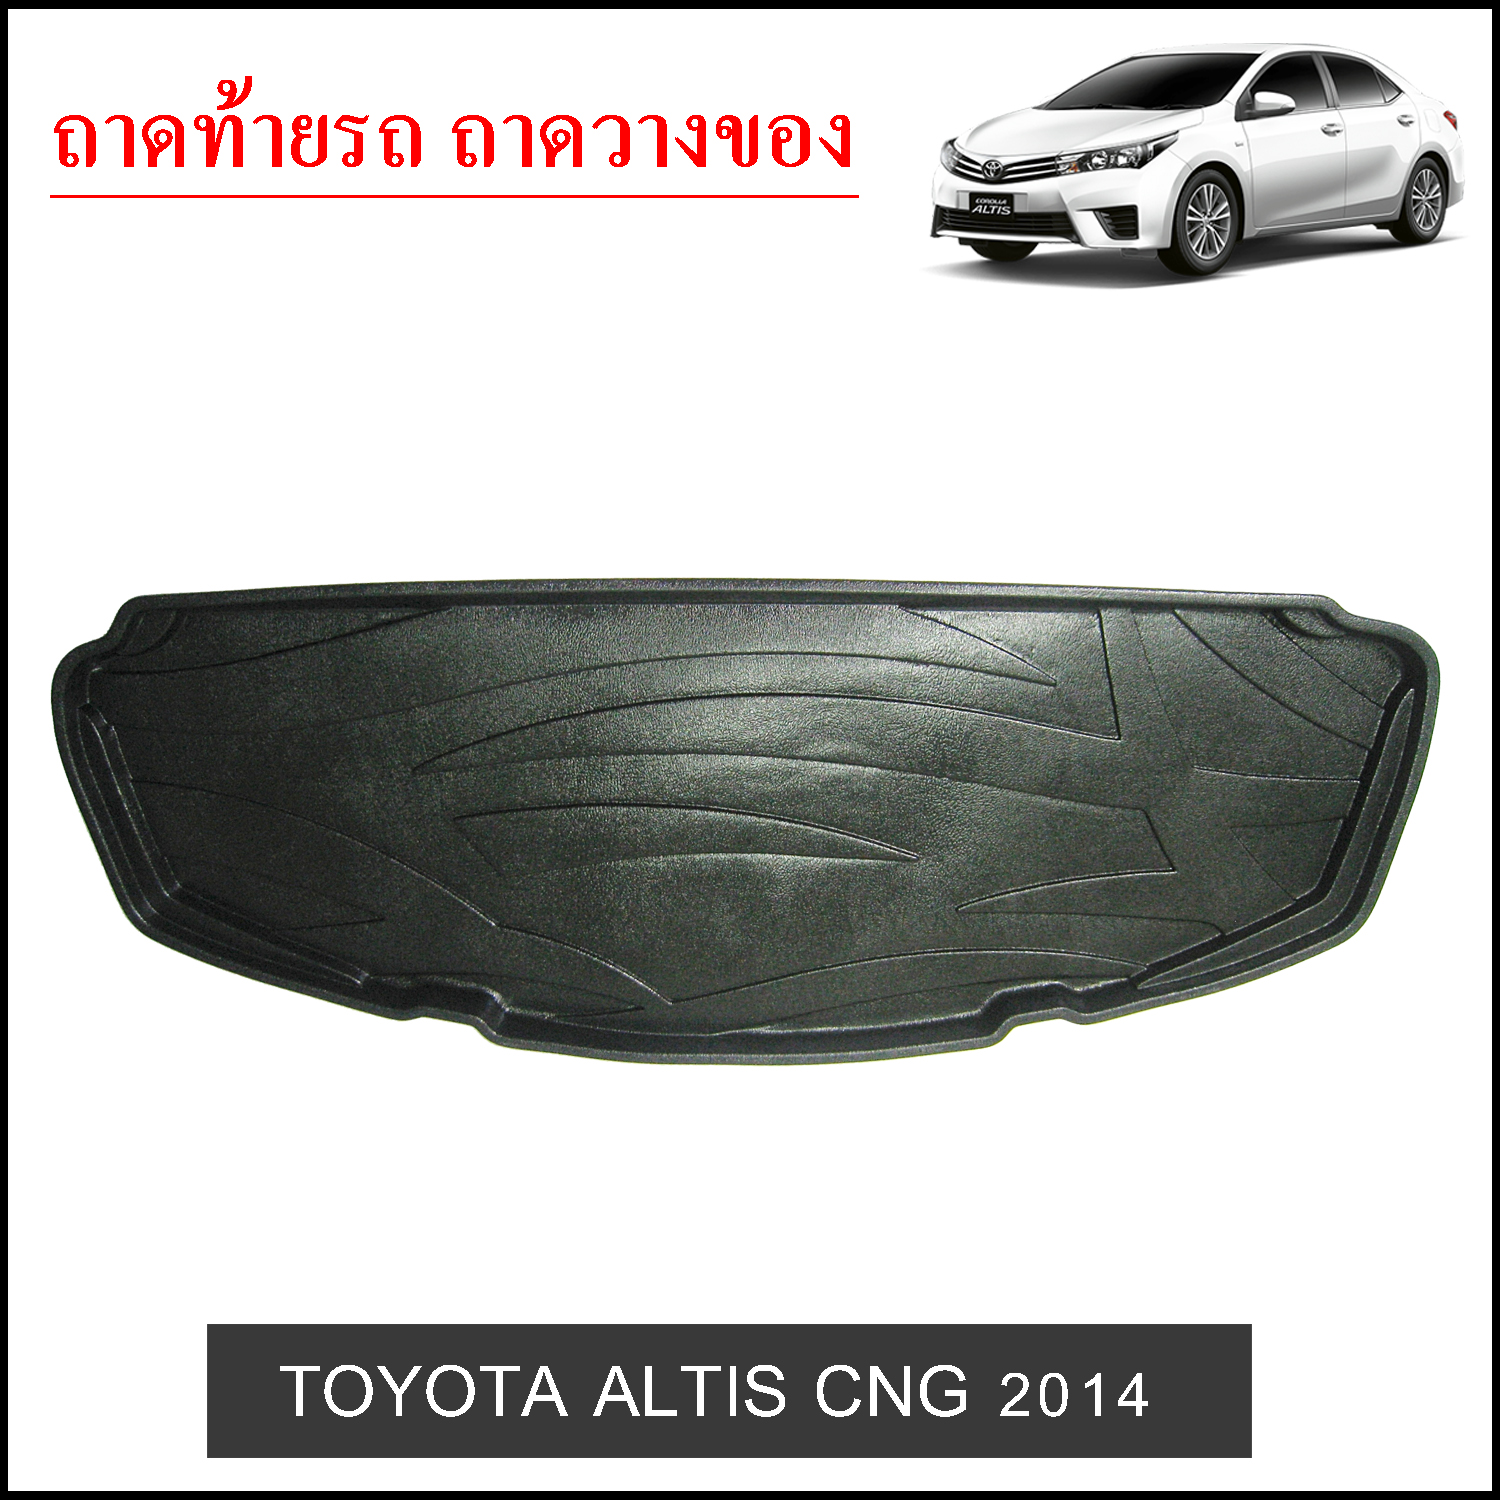 ถาดท้ายวางของ Toyota Altis 2014 CNG